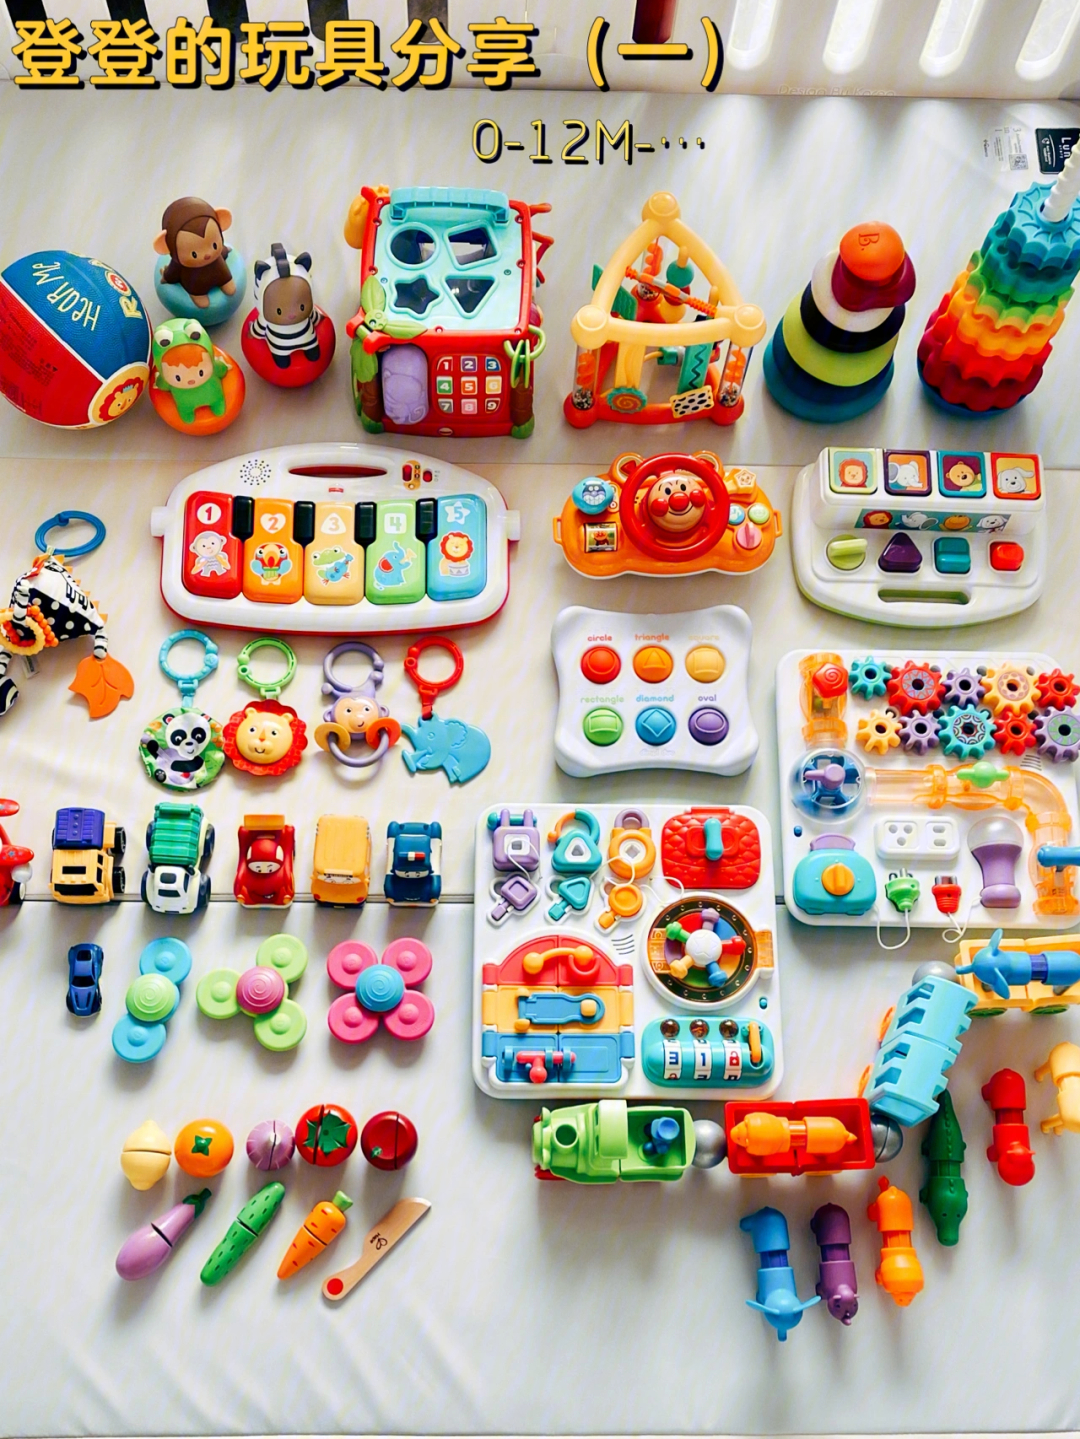 一直在给阿登选玩具的路上摸索,产品太多让人眼花缭乱…想法比较简单